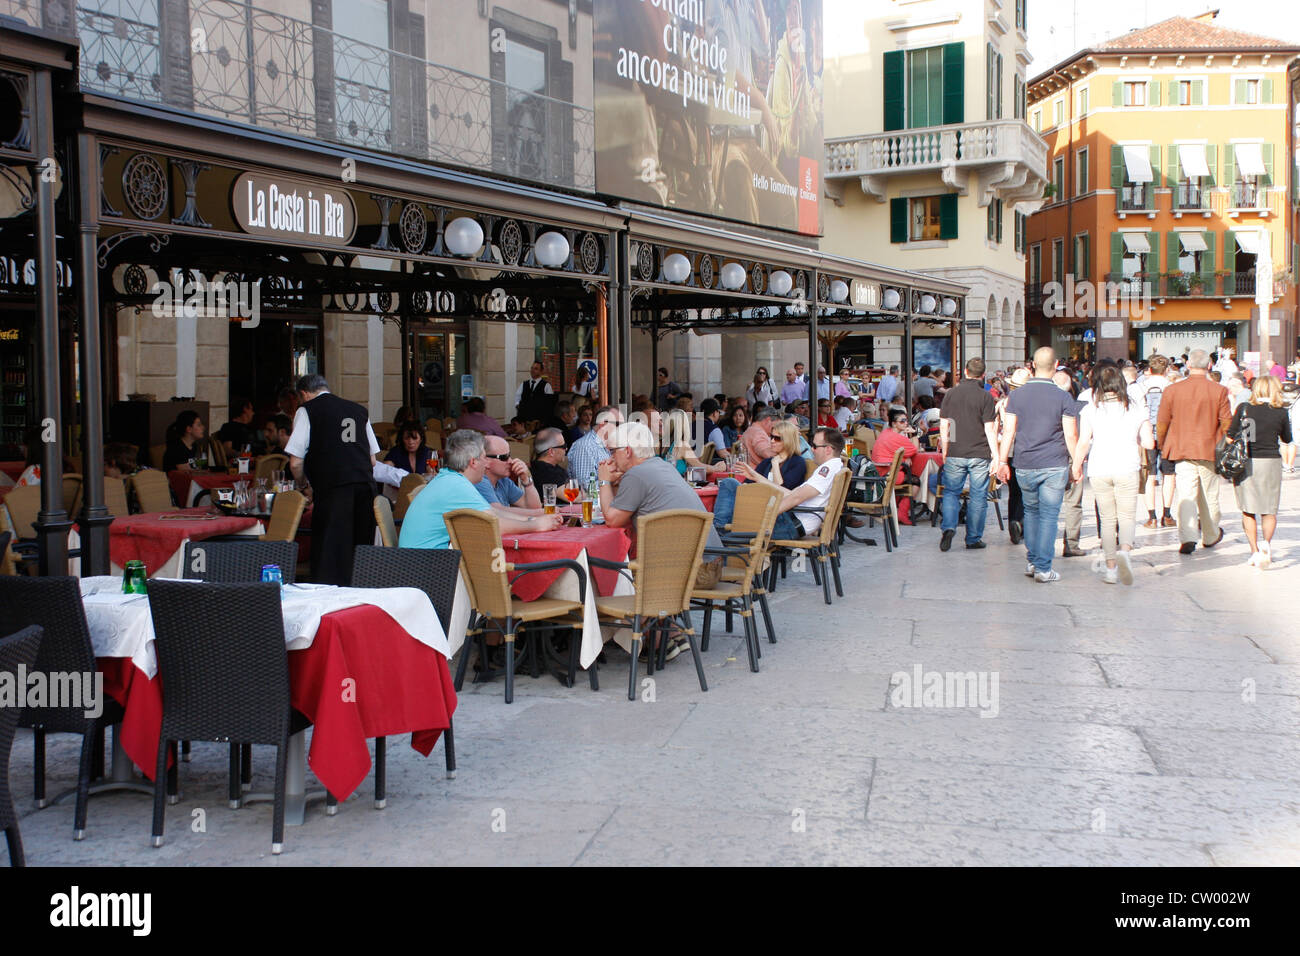 Concurrido restaurante turístico / cafetería en el centro de Verona, junto a la arena en la Piazza Bra,Italia Foto de stock